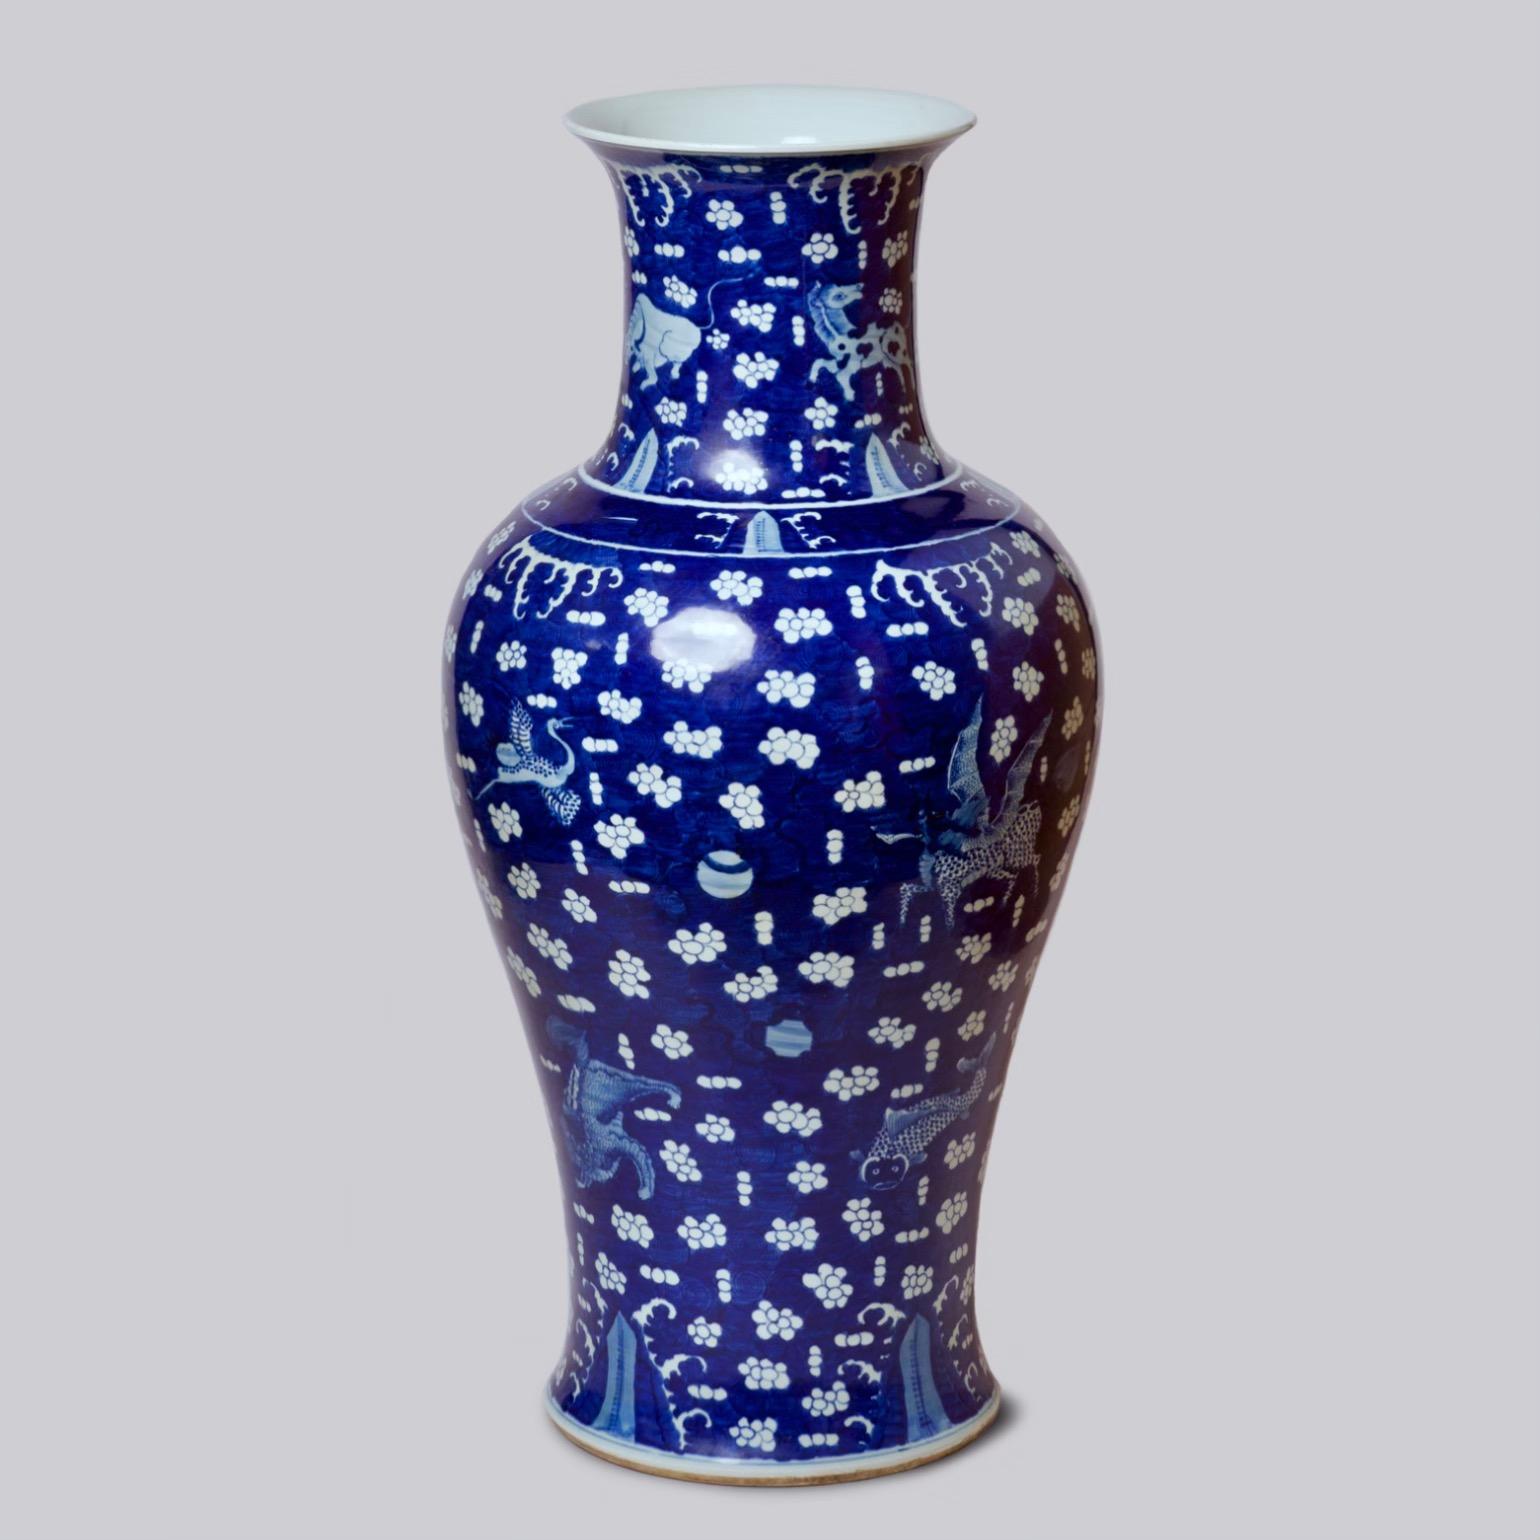 Bei dieser Vase handelt es sich um ein traditionelles Porzellangefäß aus Jingdezhen, einer Stadt, die lange Zeit unter kaiserlicher Schirmherrschaft stand. Ein ungewöhnliches blaues Feld mit Wolken und glücksverheißenden Kreaturen hebt diese Vase